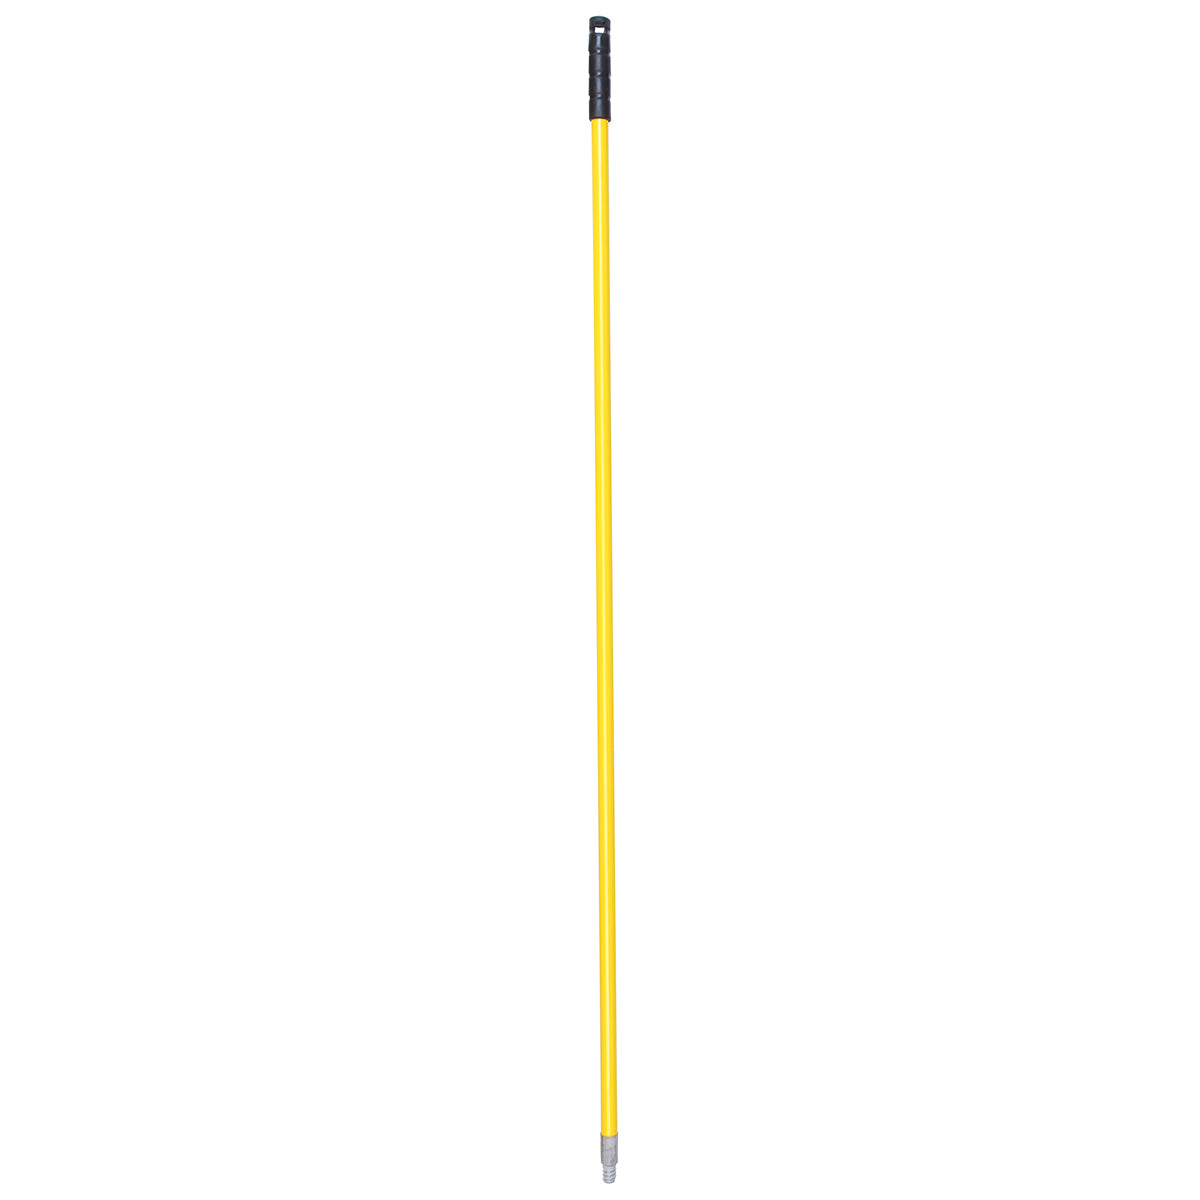 Baston de Fibra de Vidrio 1.5 Metros de Largo Color Amarillo